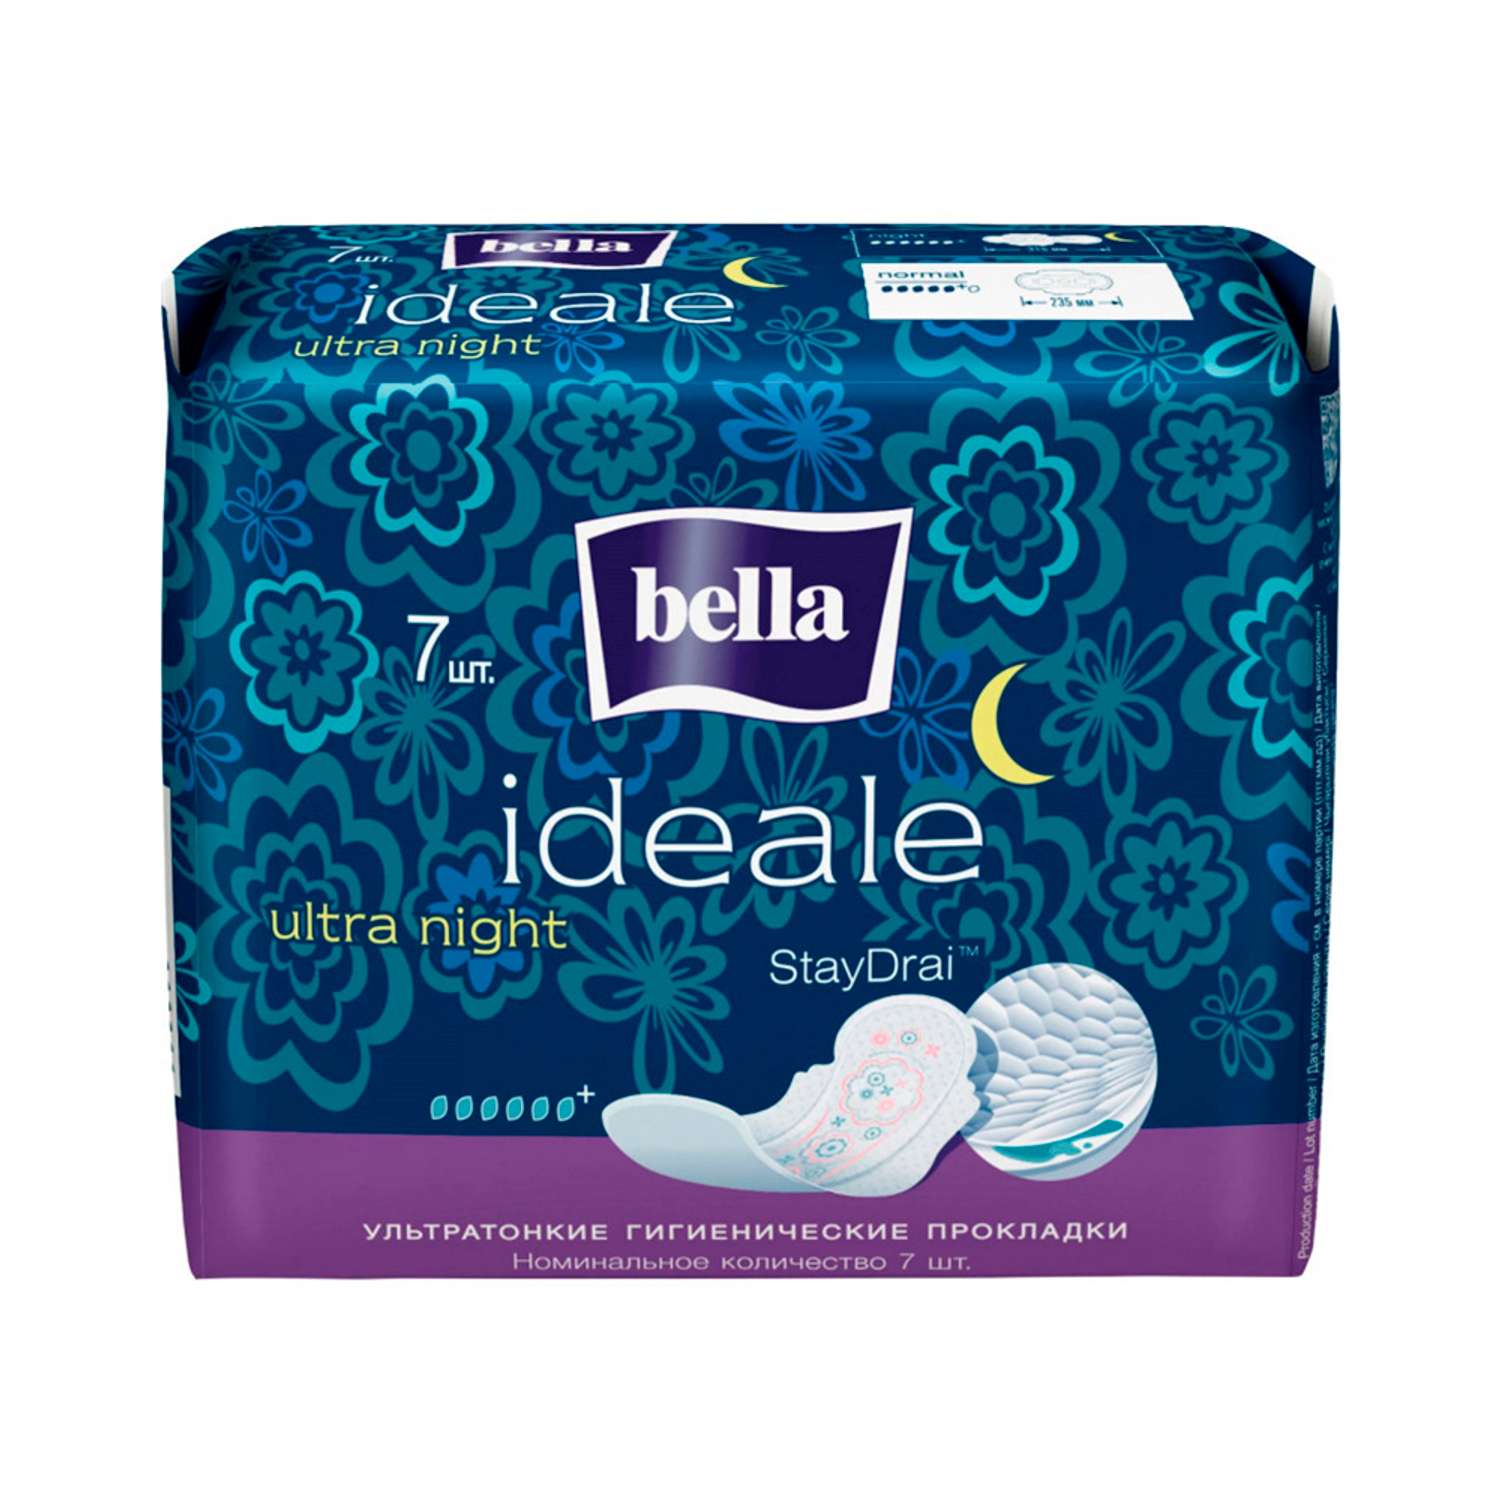 Гигиенические прокладки BELLA Ideale ultra night Stay Drai 7шт - фото 1